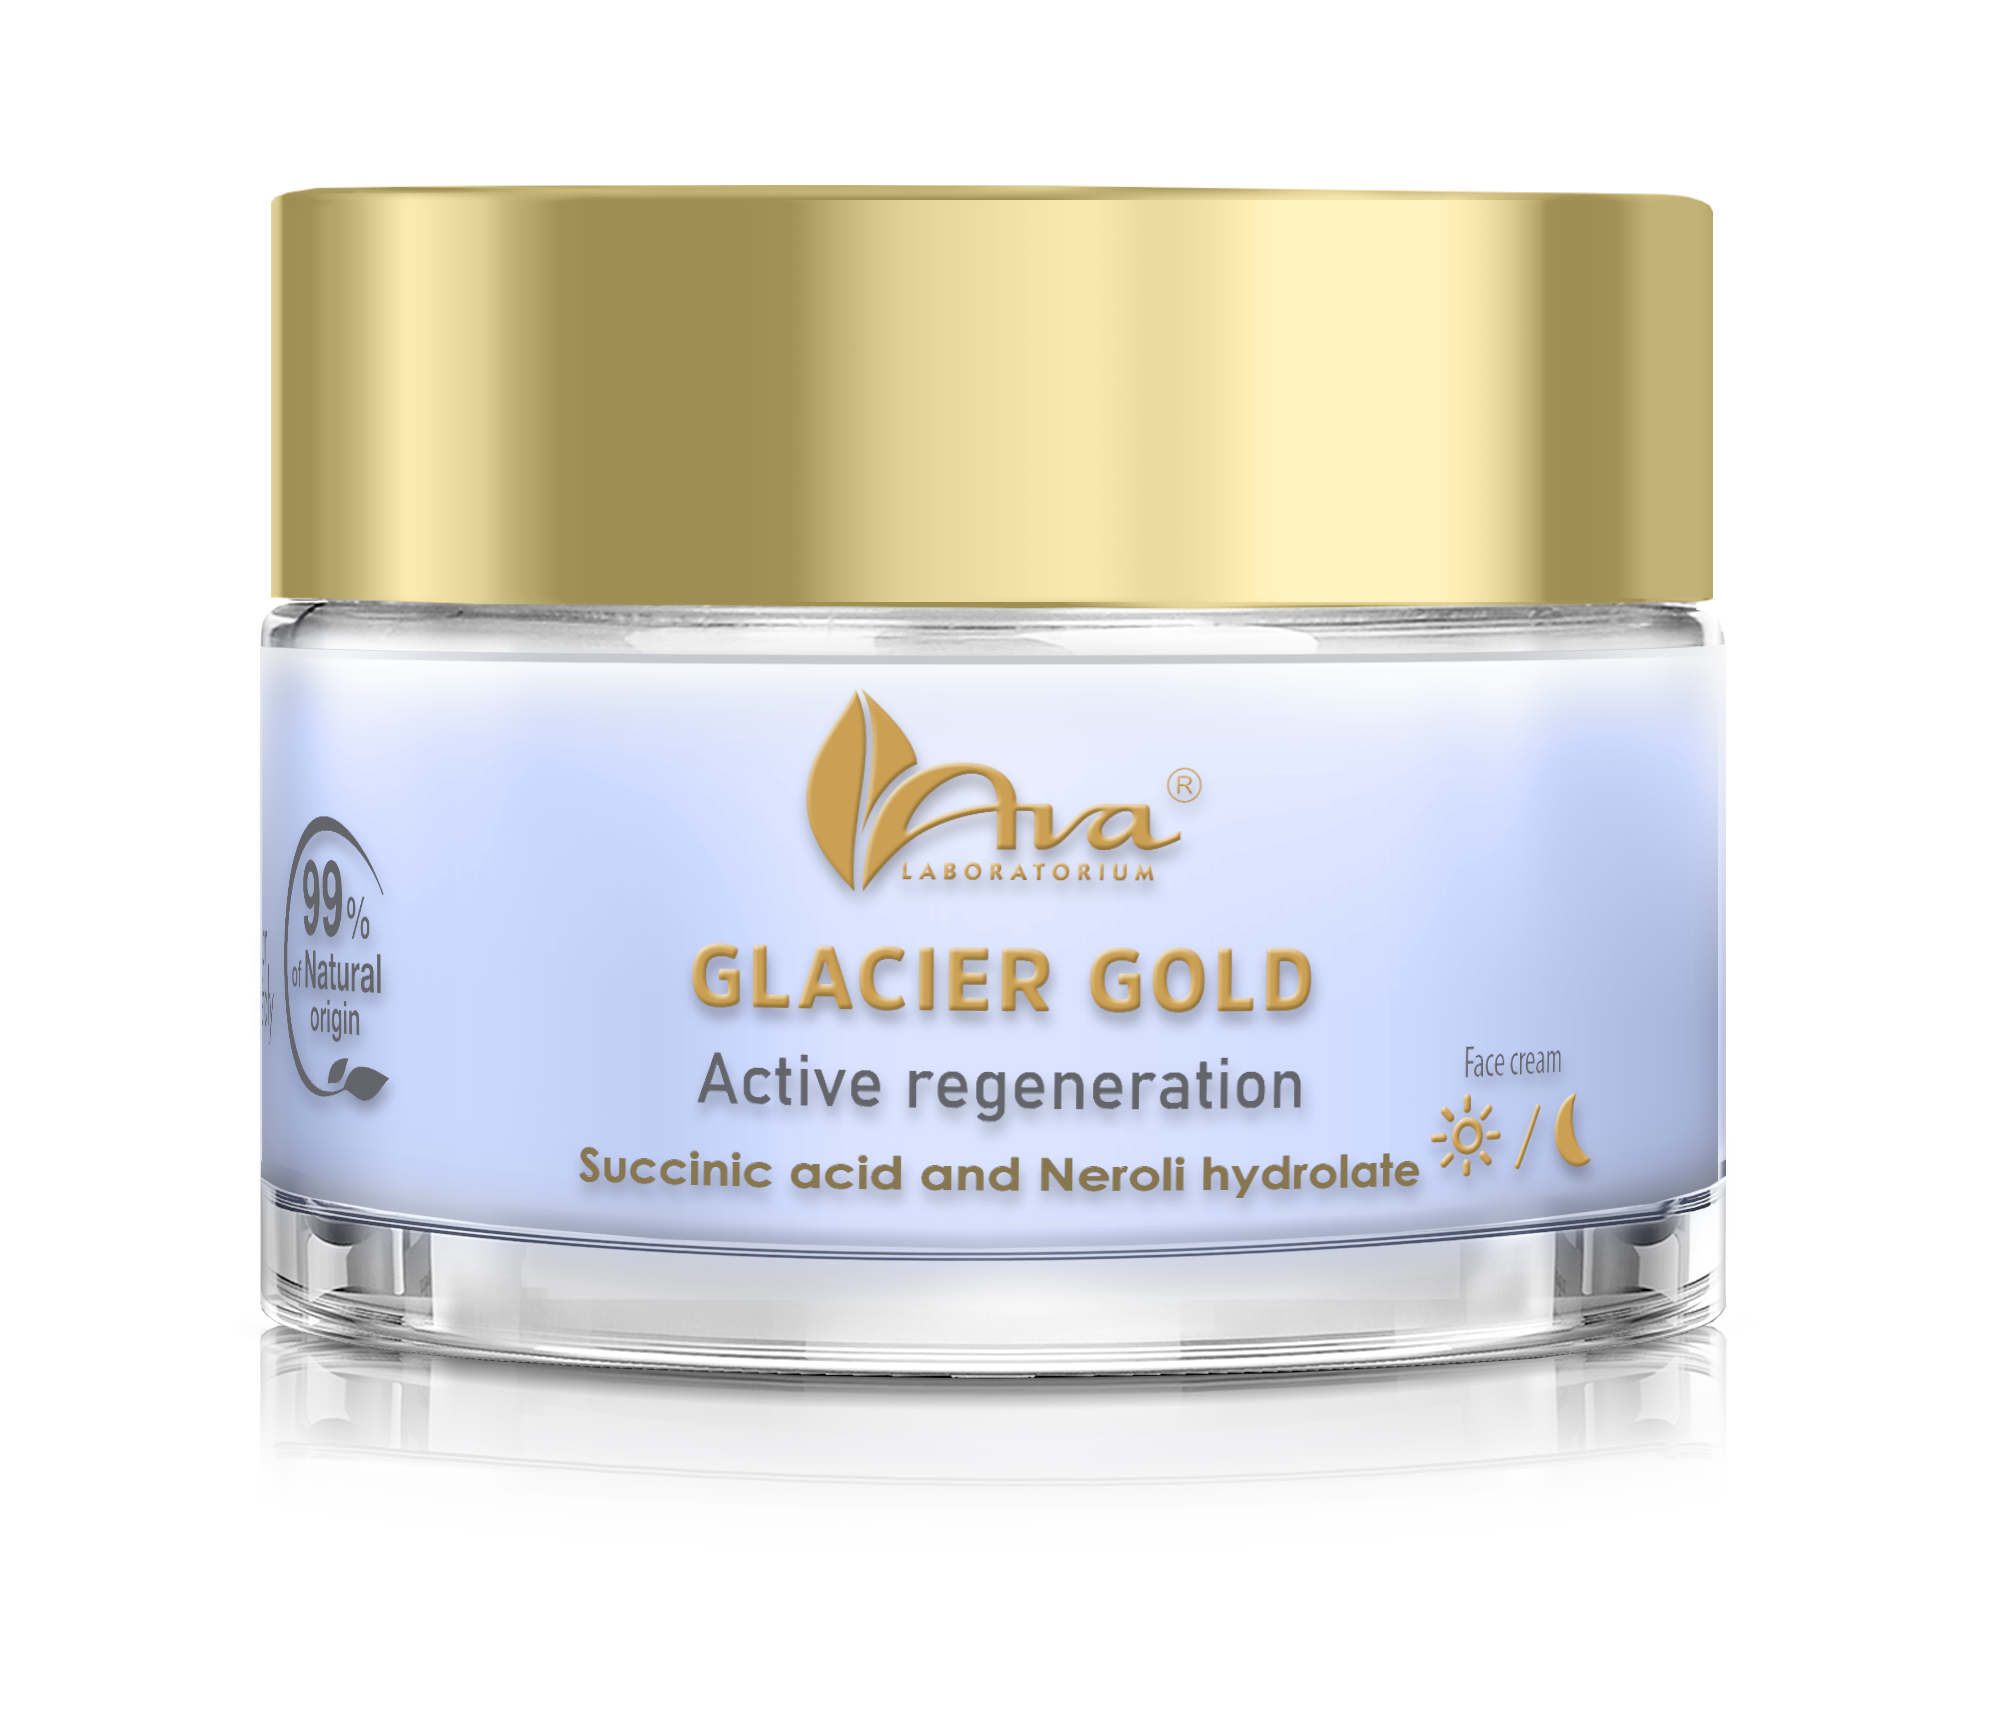 Glacier Gold Active regeneration JAR